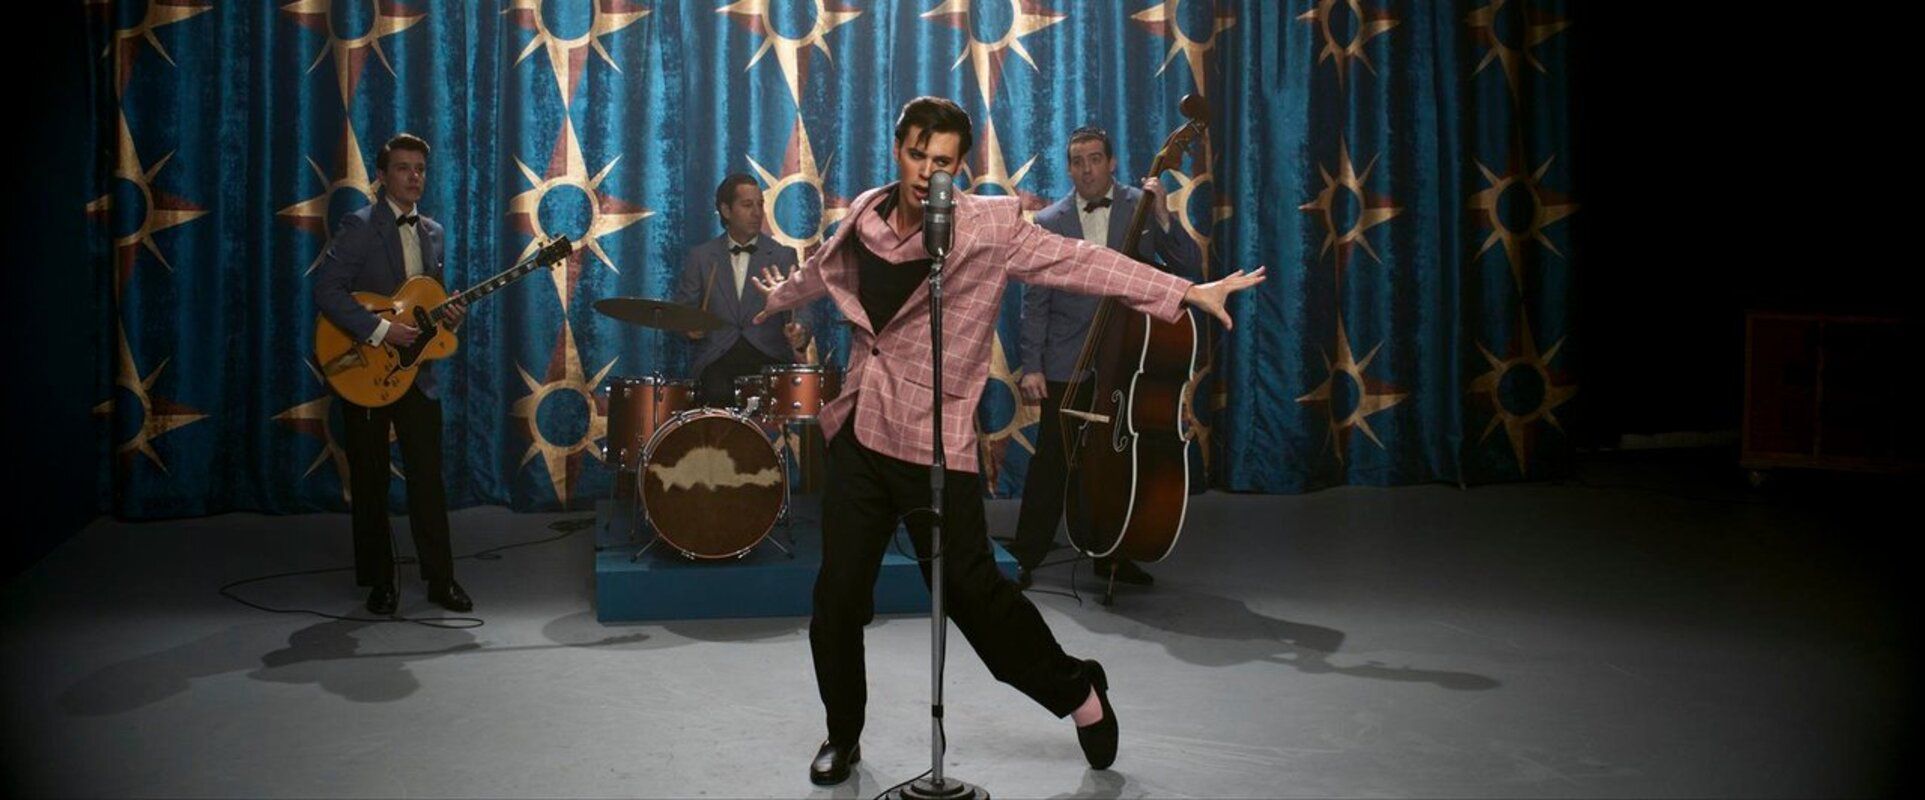 'Elvis', el último homenaje al Rey del Rock llega este viernes a los cines